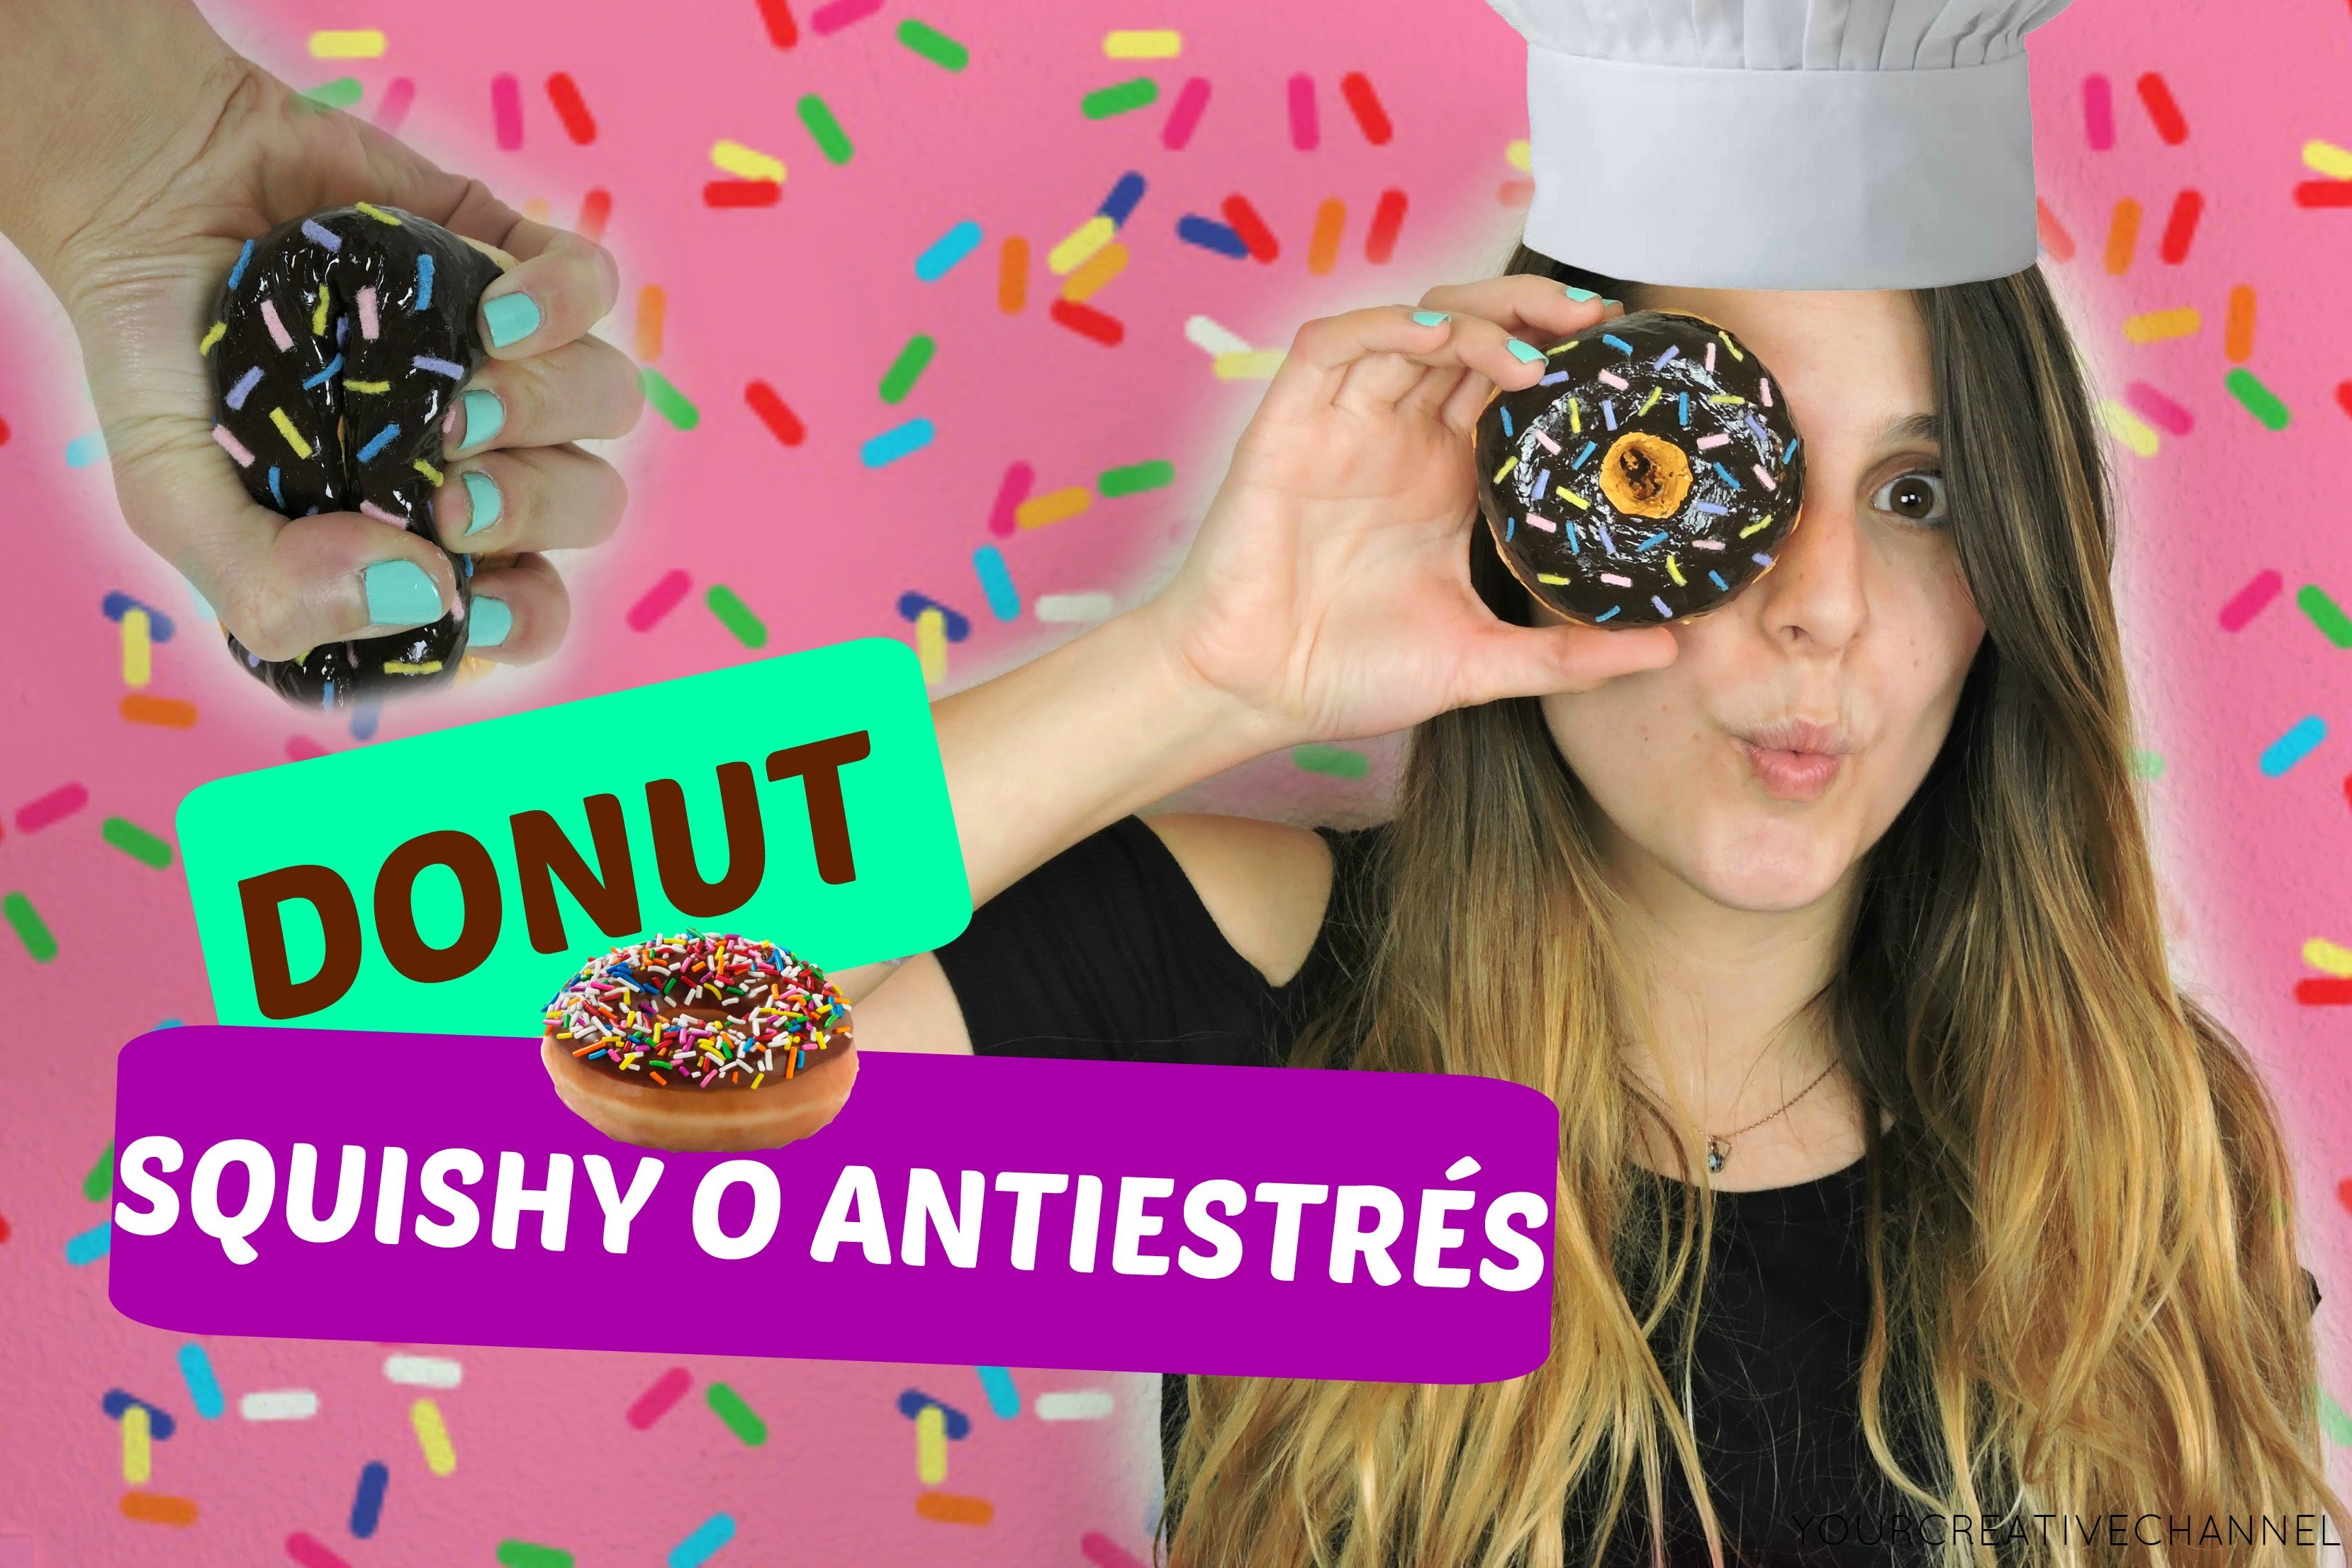 DIY donut squishy o antiestrés - DIY donut squishy or stress ball